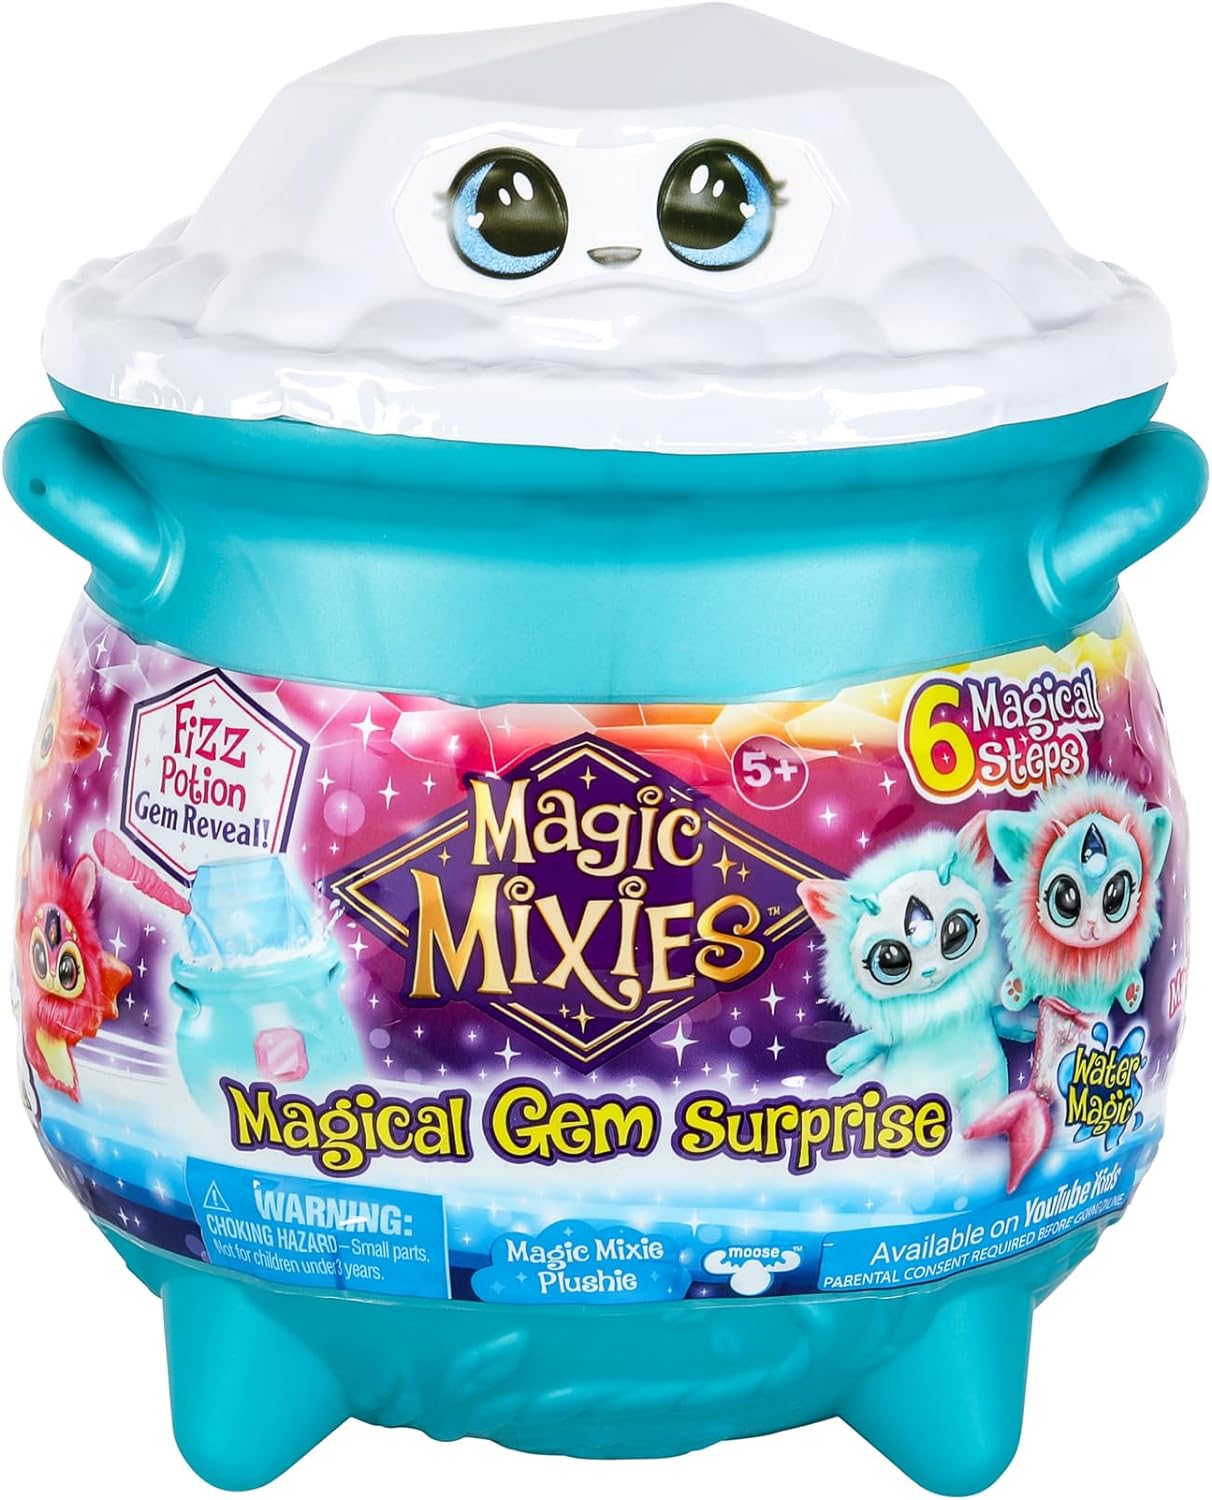 Magic Mixies マジックミクシーズ 大釜 マジカル ジェム サプライズ ウォーター ぬいぐるみ 全2種類 魔法 おもちゃ 並行輸入品